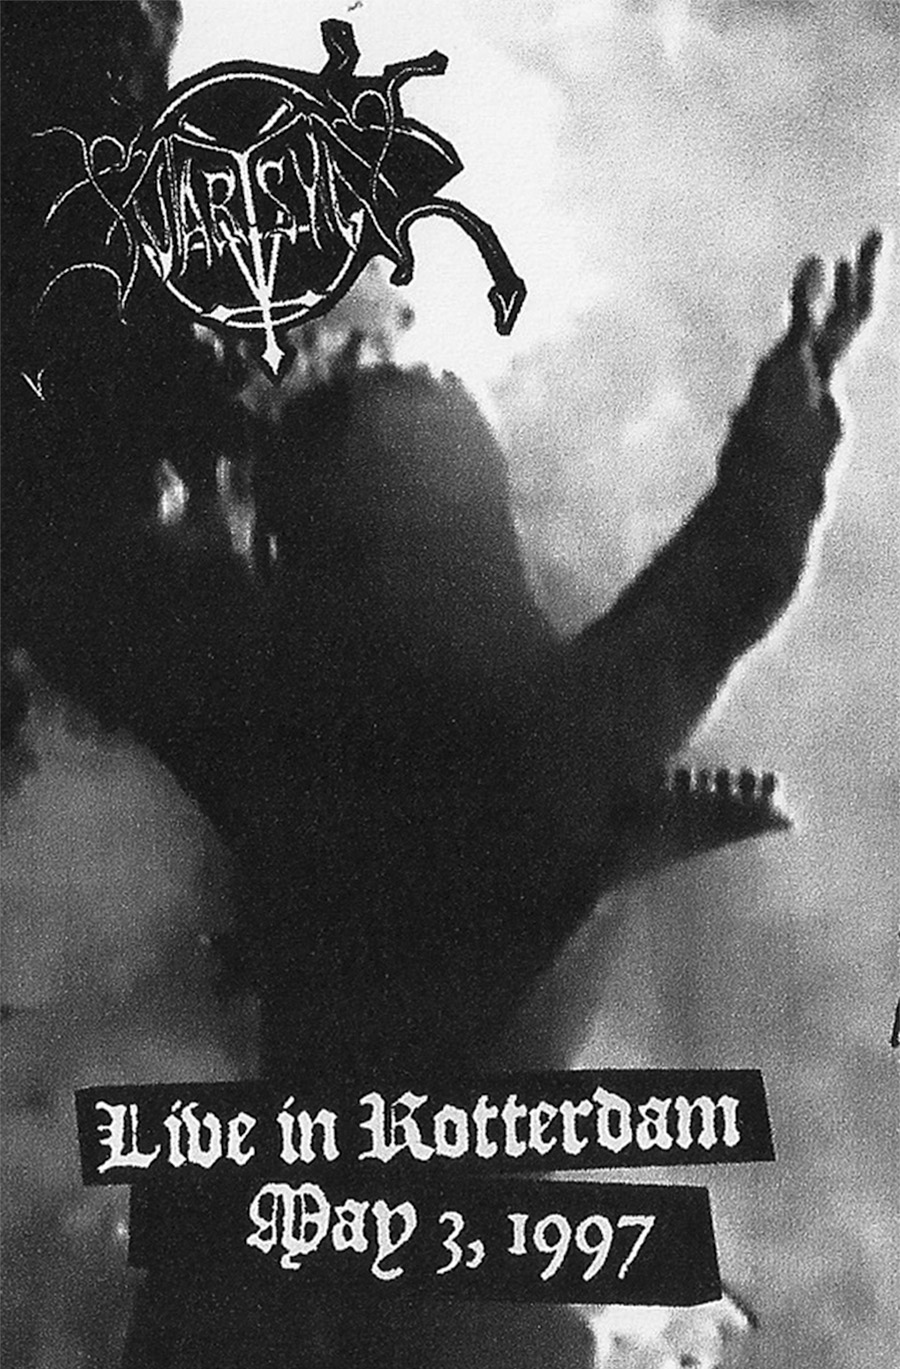 svartsyn – live in rotterdam 1997